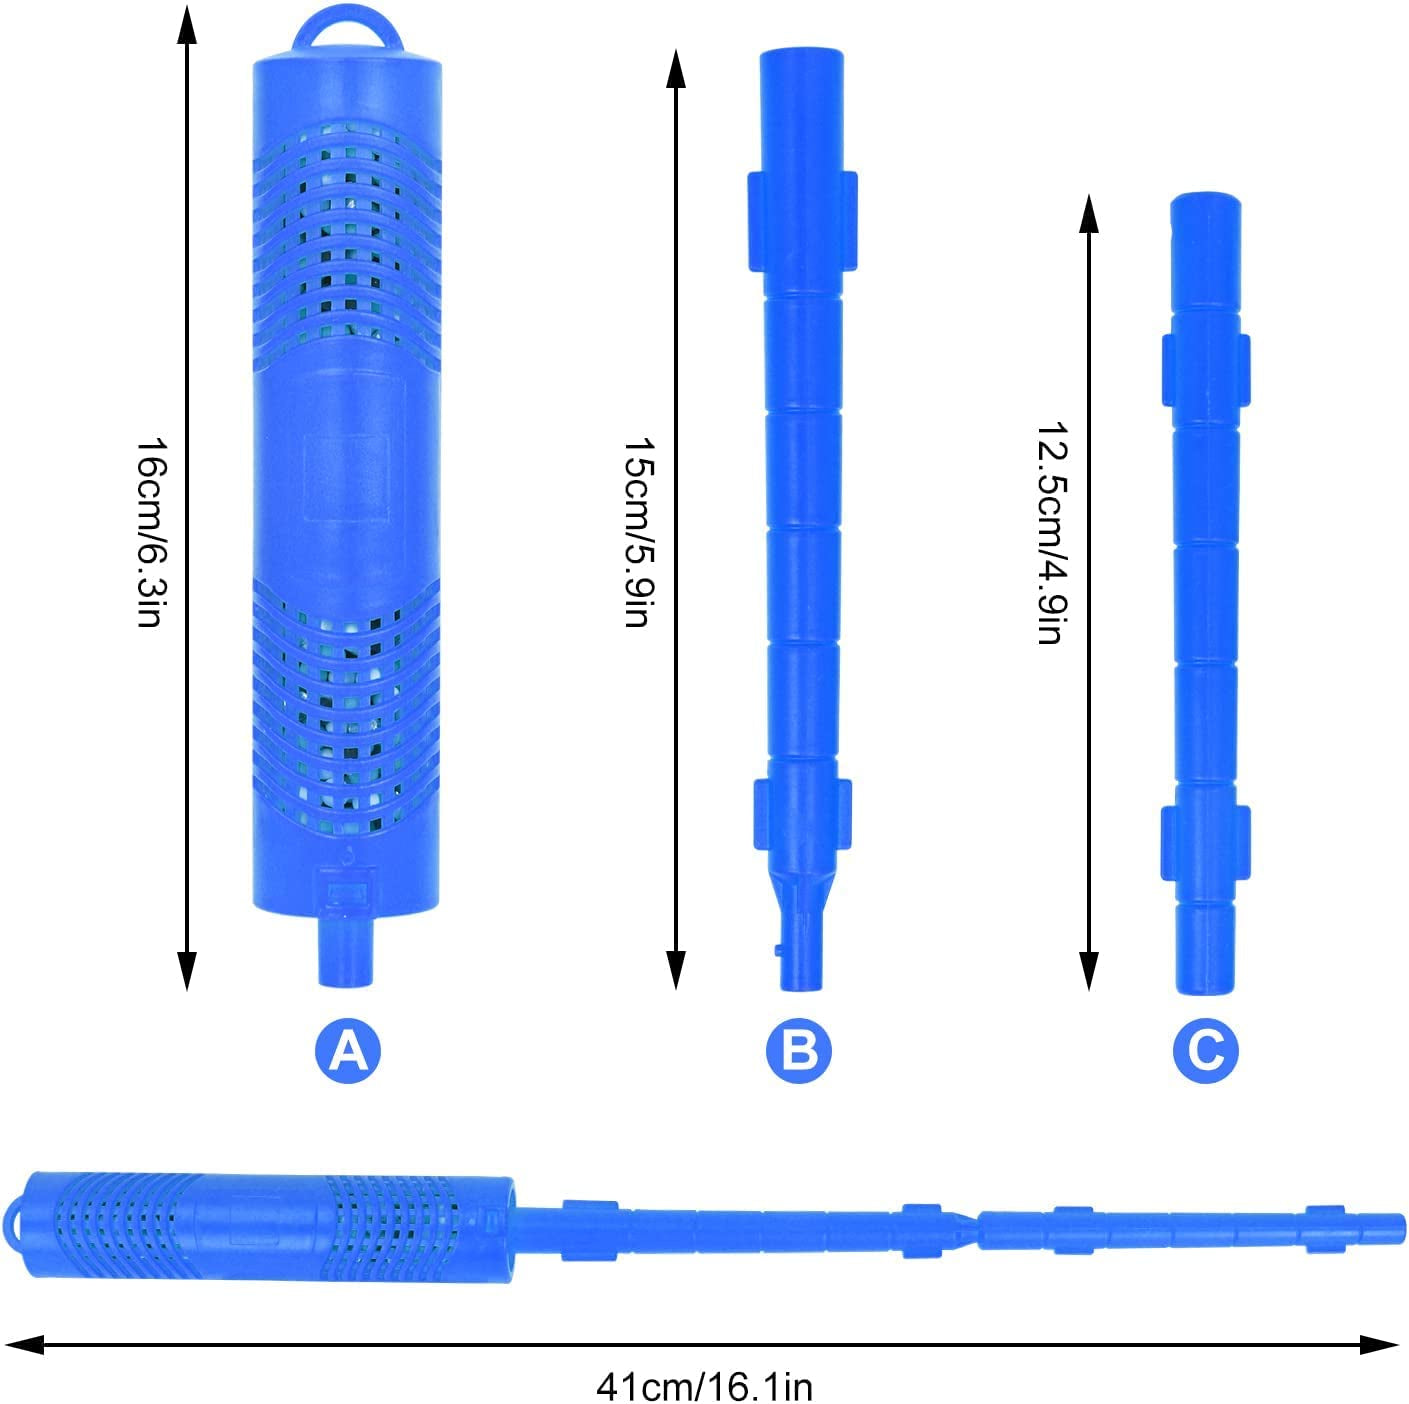 DVUBMO, DVUBMO Spa Mineral Sticks for Hot Tub, 2 Stick Spa Mineral Sanitizer Last for 4 Months (Blue)